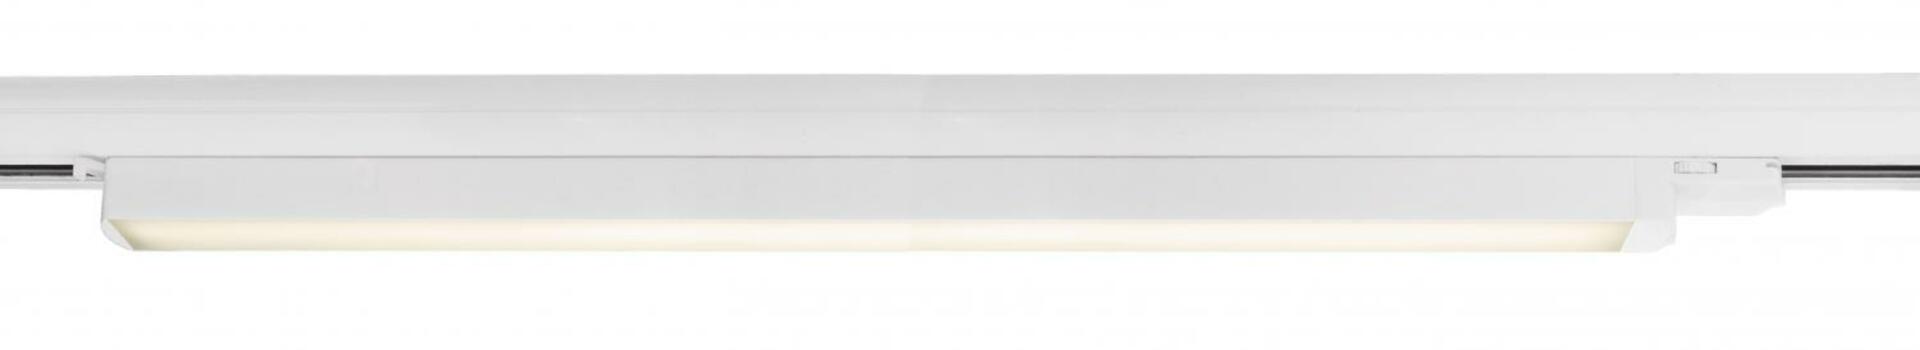 Light Impressions Deko-Light 3-fázové svítidlo, lineární 60, 18 W, 3000 K, 220-240V bílá RAL 9016 687 mm 707147